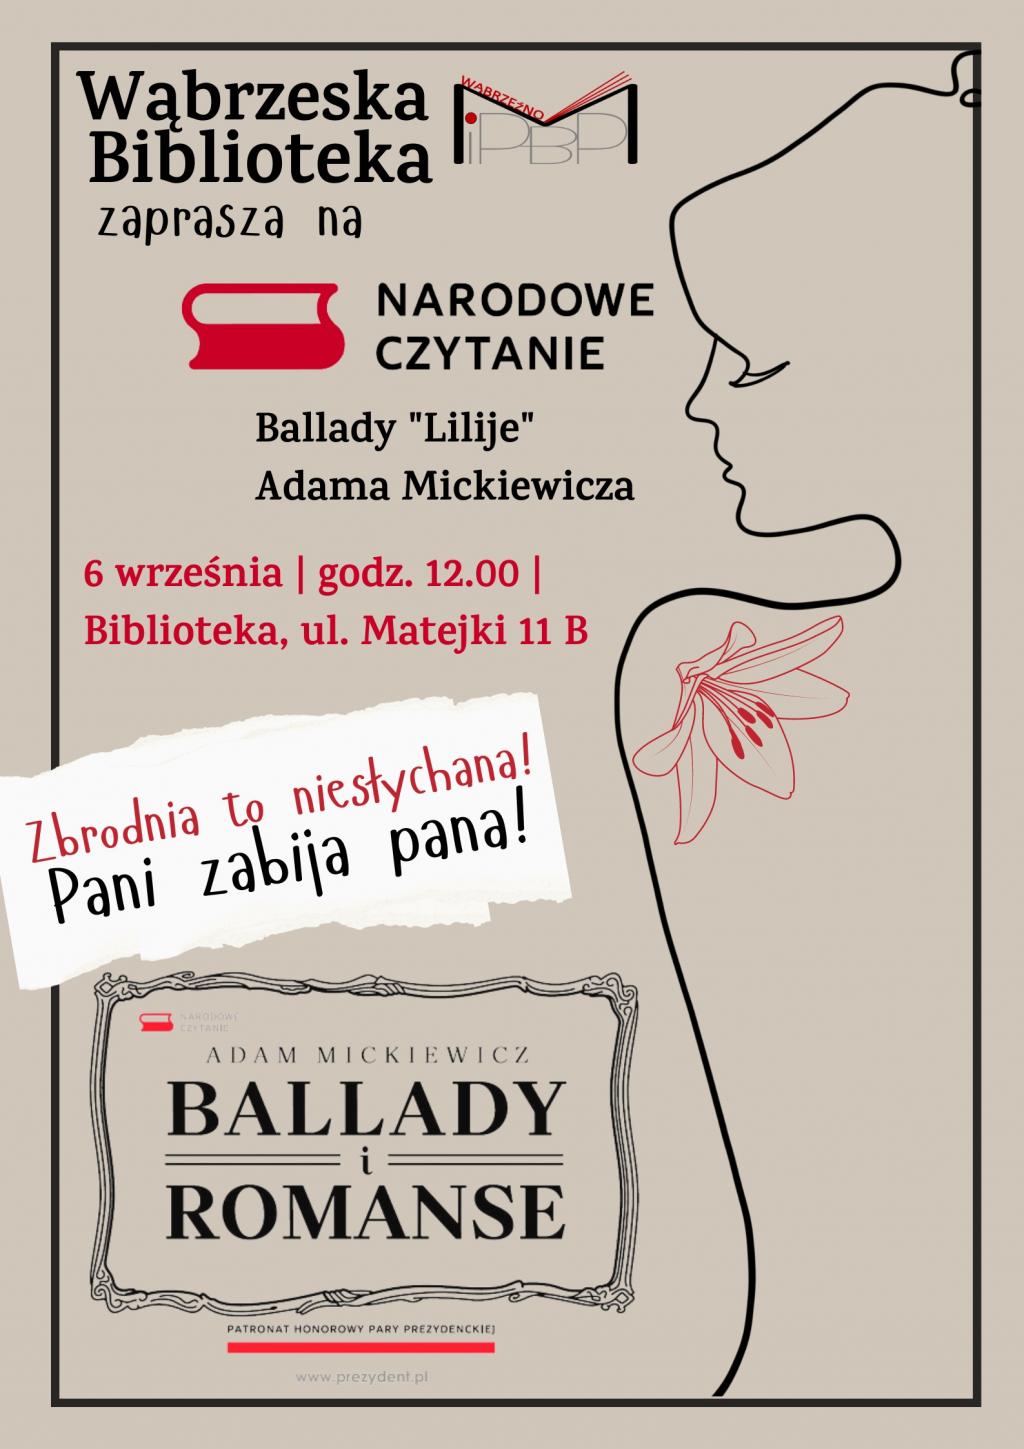 Ballady i romanse - Narodowe Czytanie - tegoroczna edycja już 6 września!